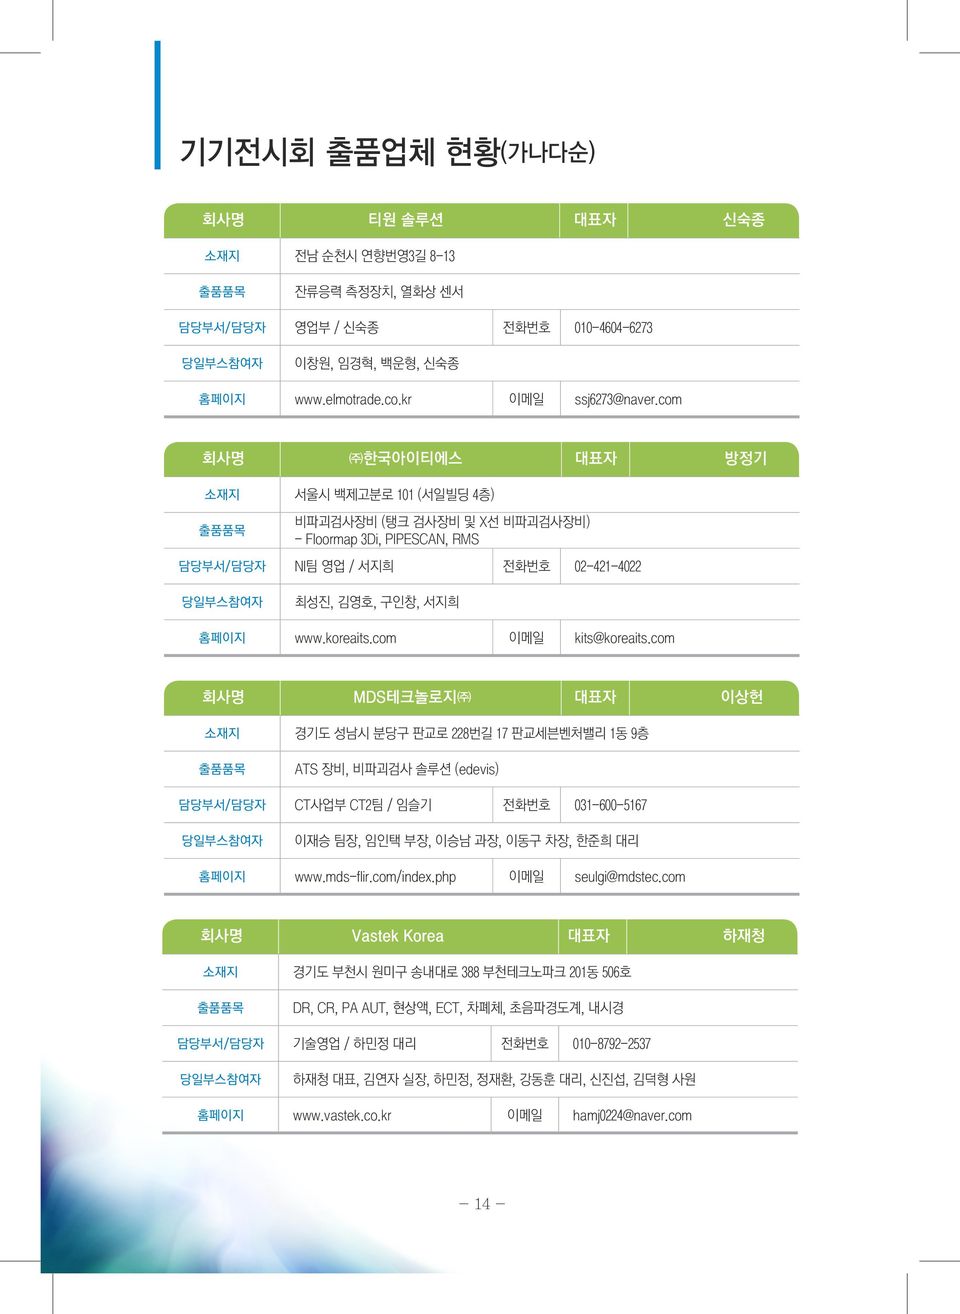 koreaits.com 이메일 kits@koreaits.